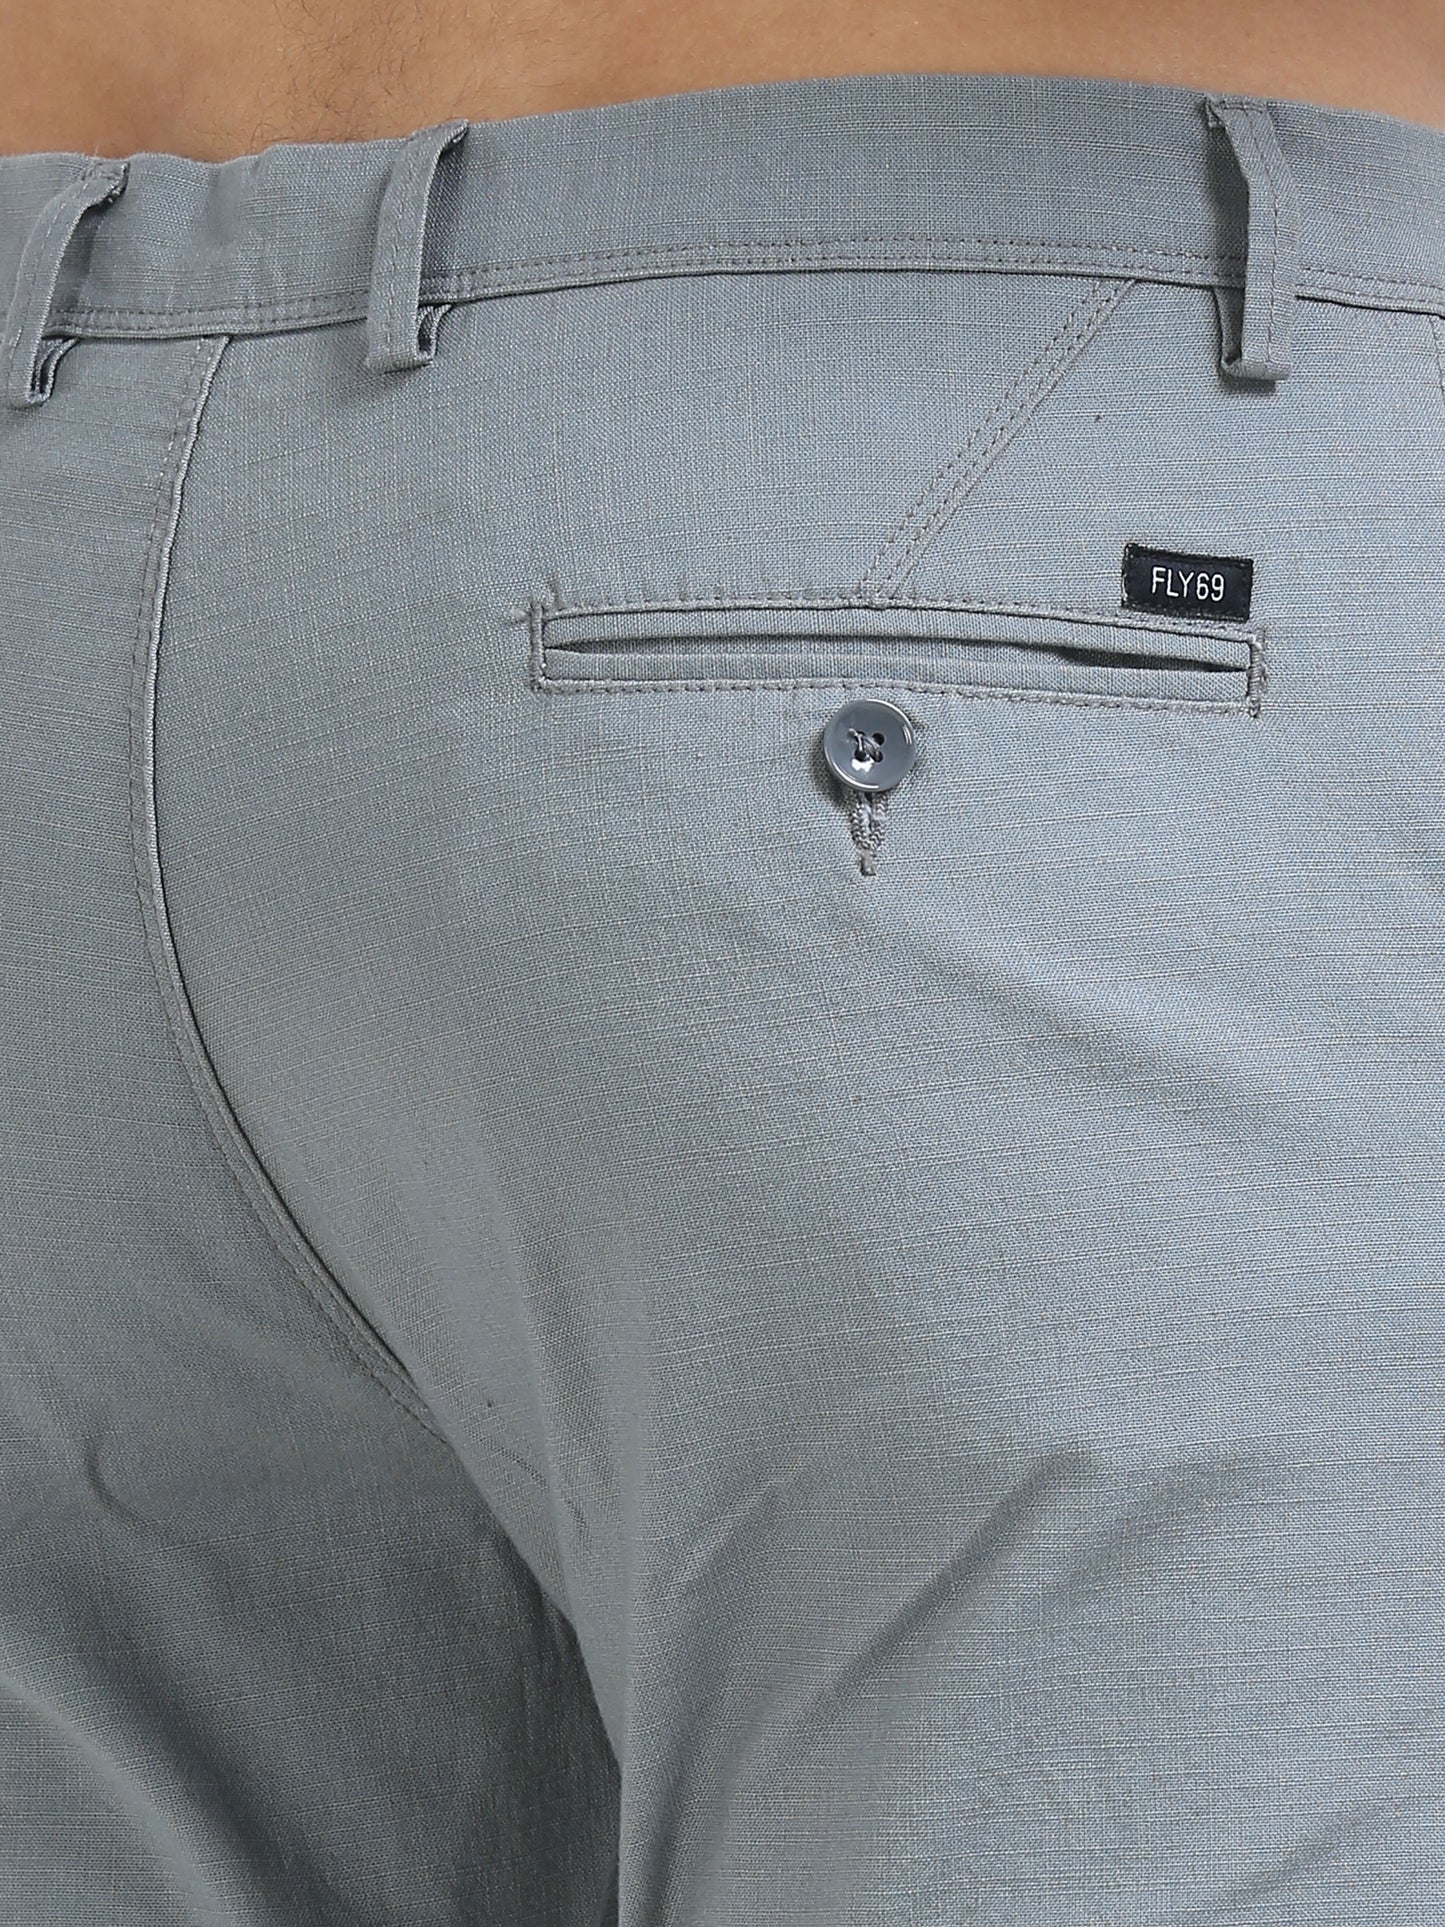 Slate Grey Linen Trouser